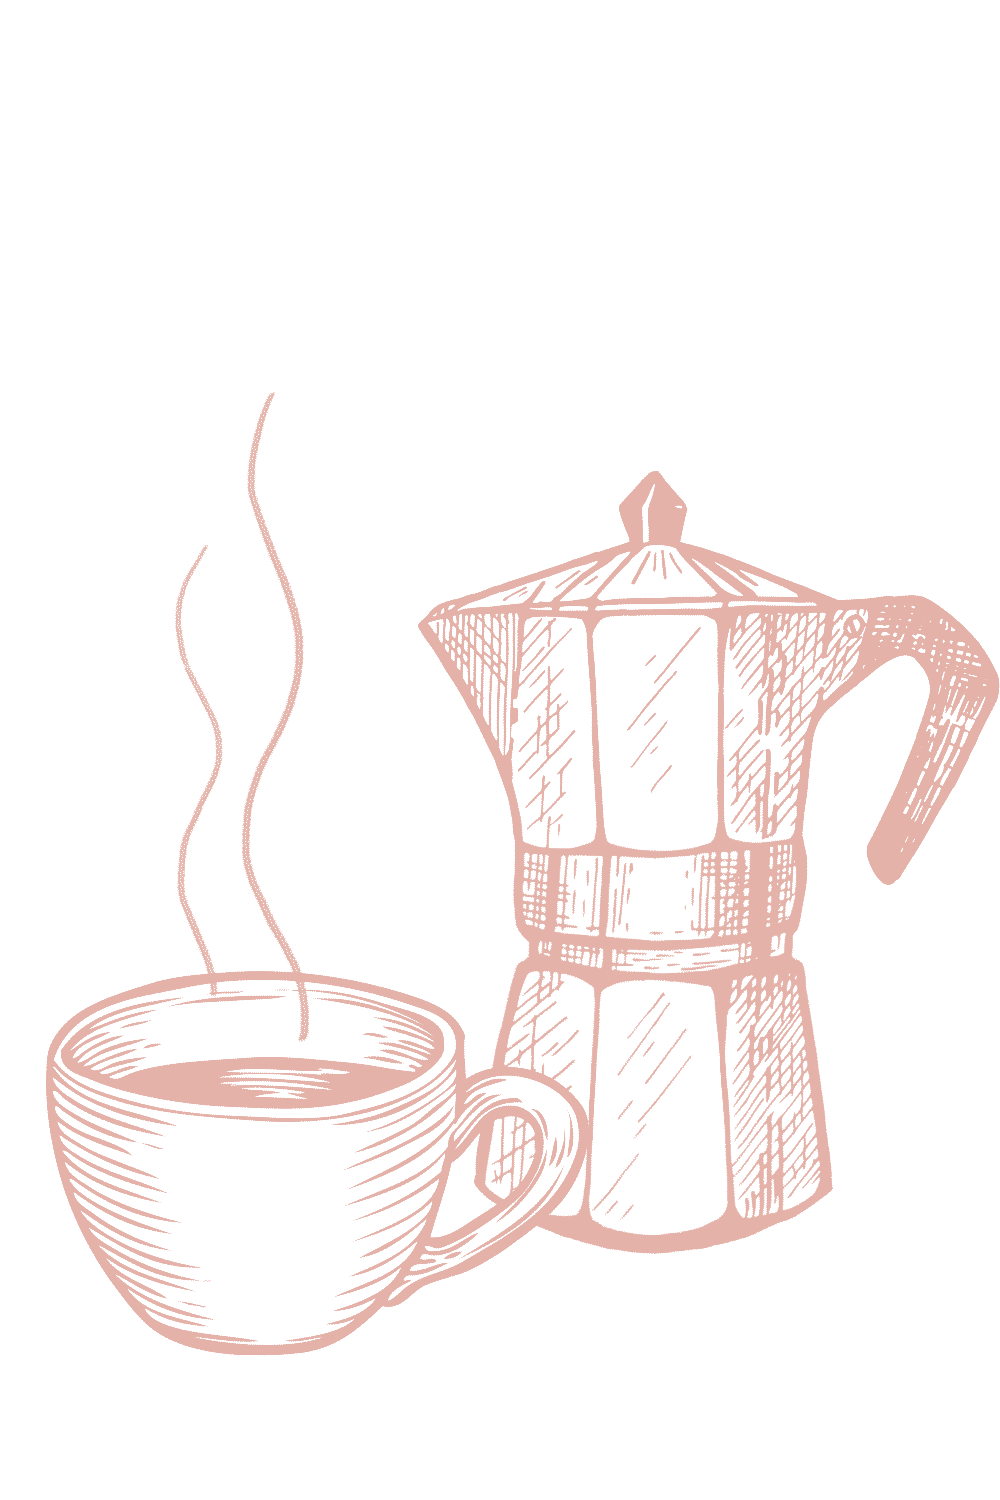 Zeichnung von einer dampfenden Tasse Kaffee, die vor einer Kanne steht